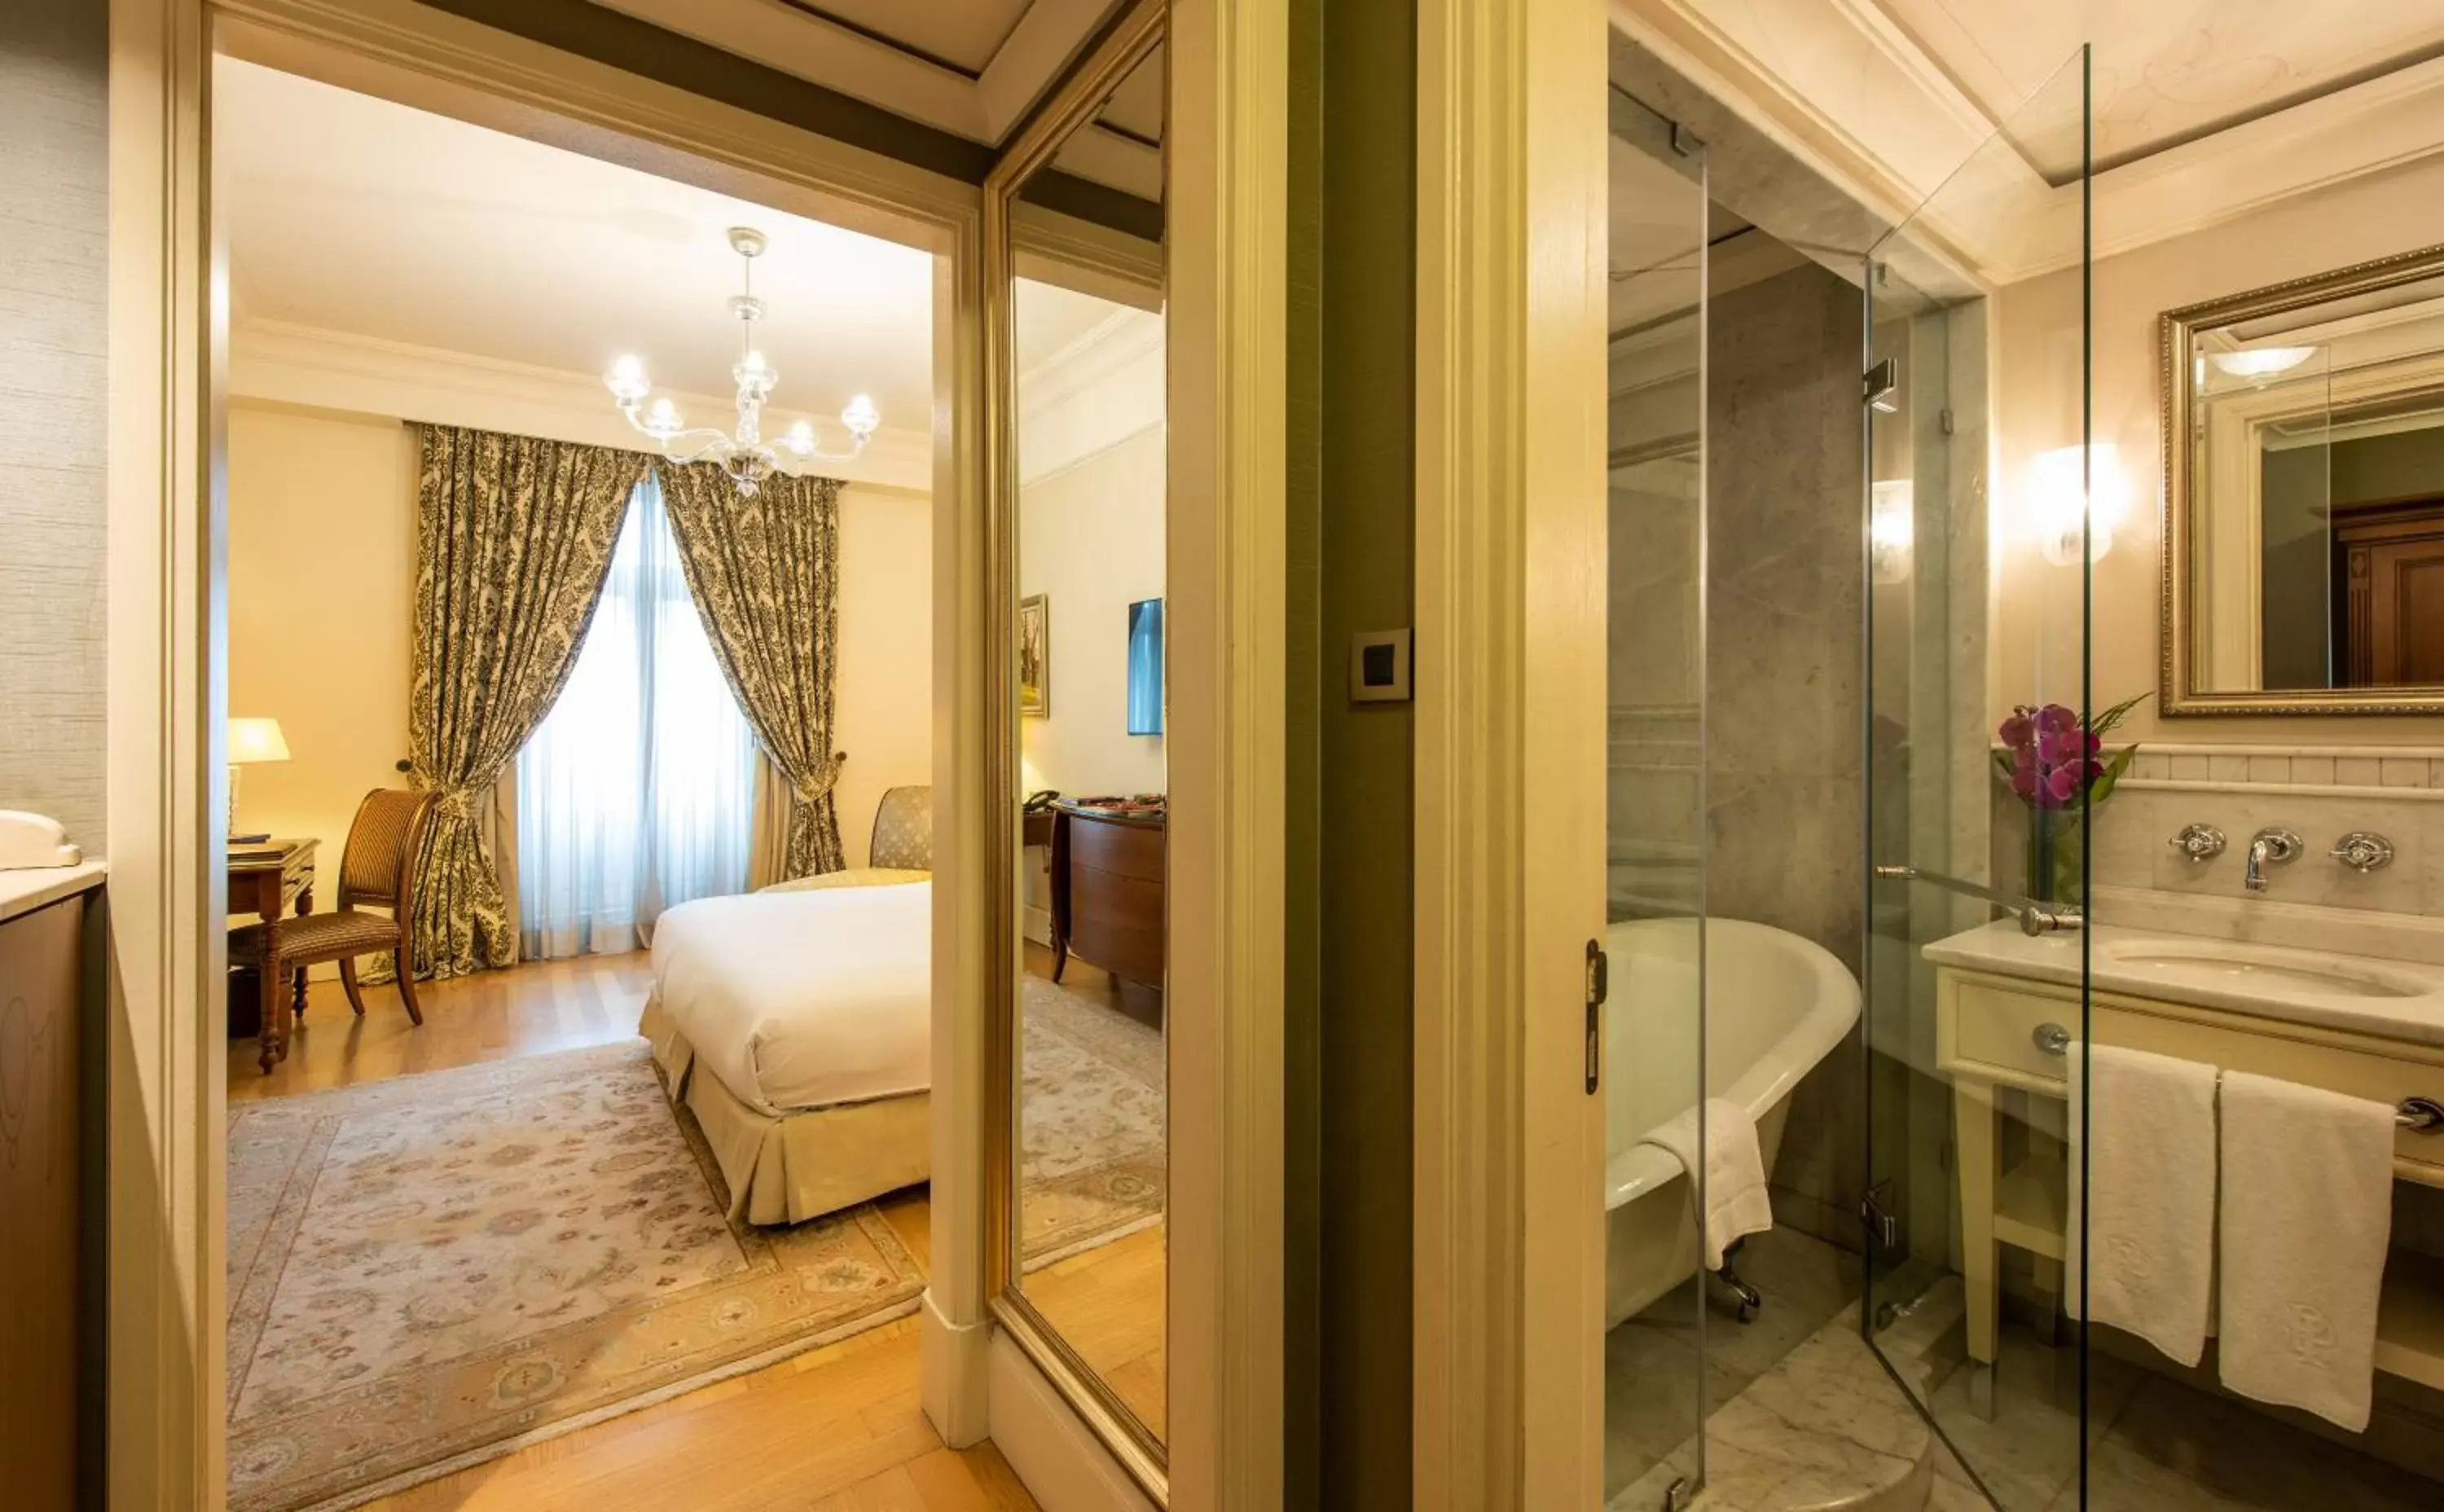 Bedroom, Bathroom in Pera Palace Hotel